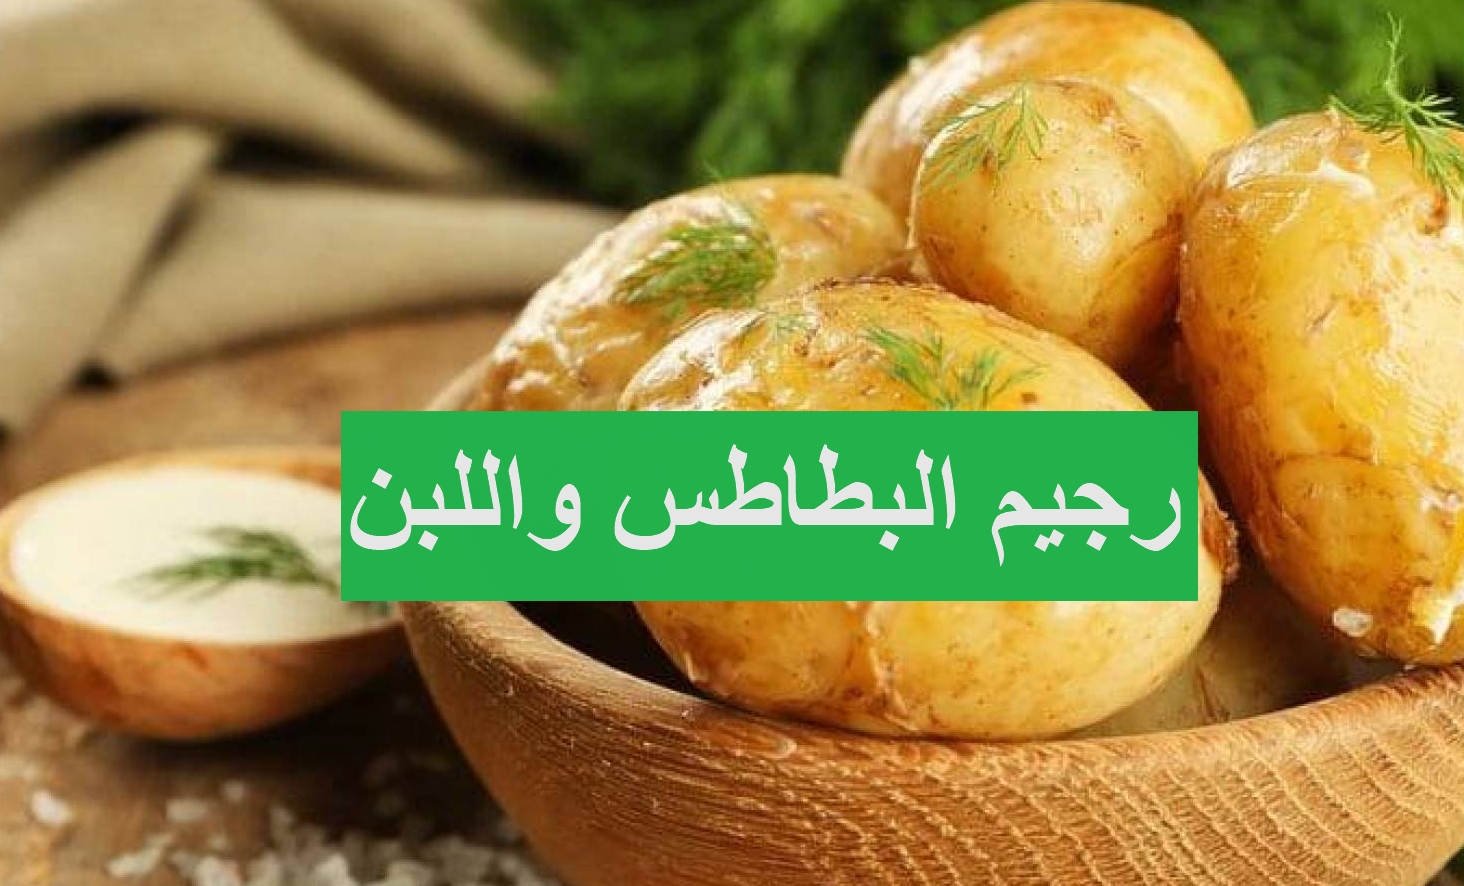 رجيم البطاطا واللبن - سر رجيم البطاطس واللبن الزبادي لخسارة كيلوغرامين في 3 ايام